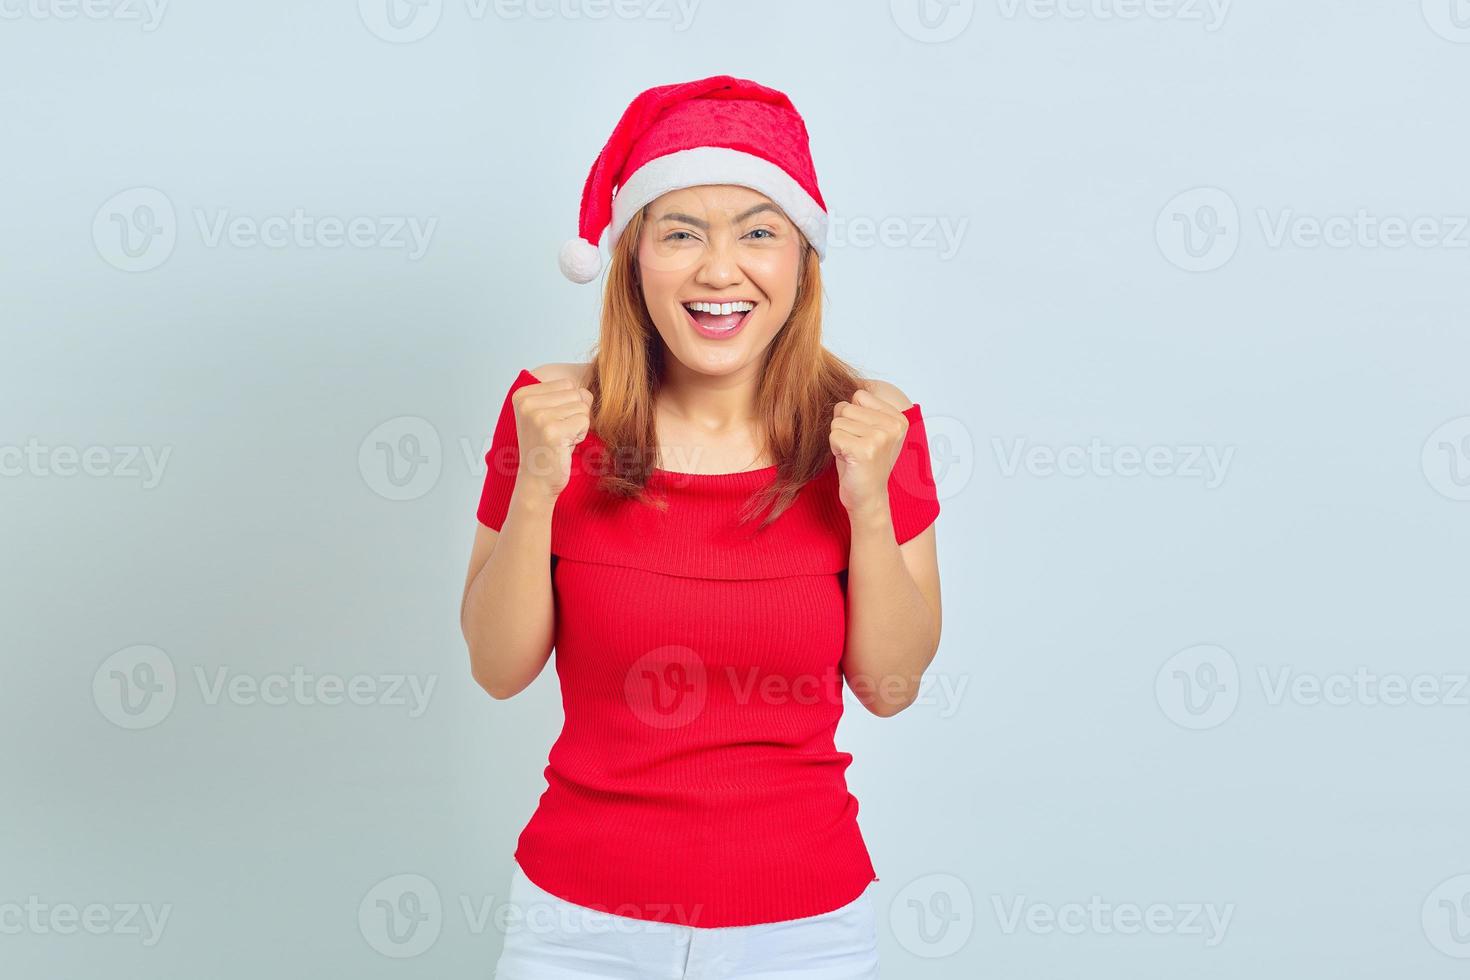 jeune femme asiatique excitée célébrant le succès avec les mains levées sur fond blanc photo